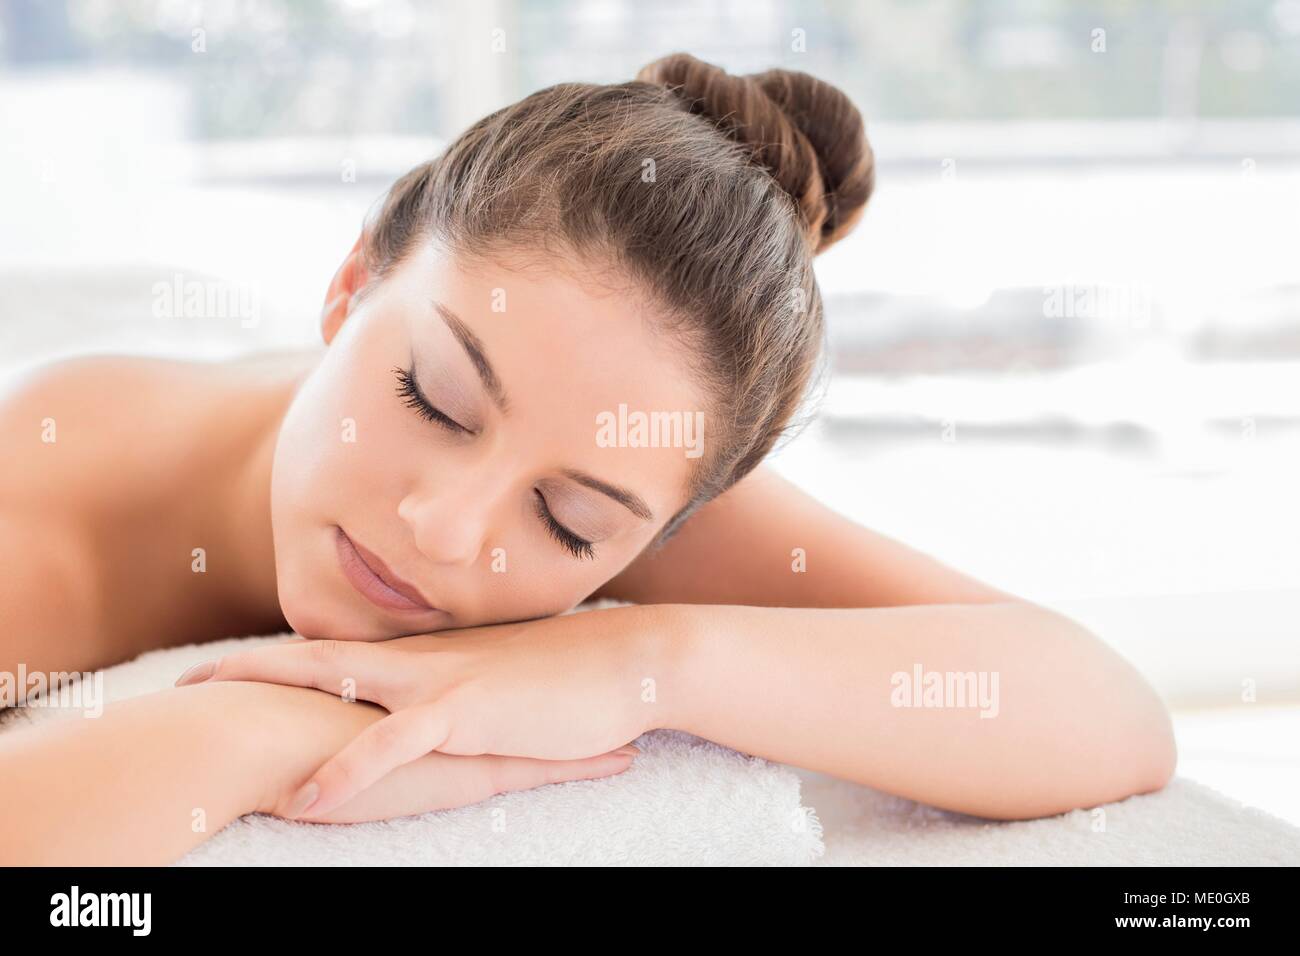 Junge Frau liegen auf dem Handtuch in Spa, die Augen geschlossen. Stockfoto